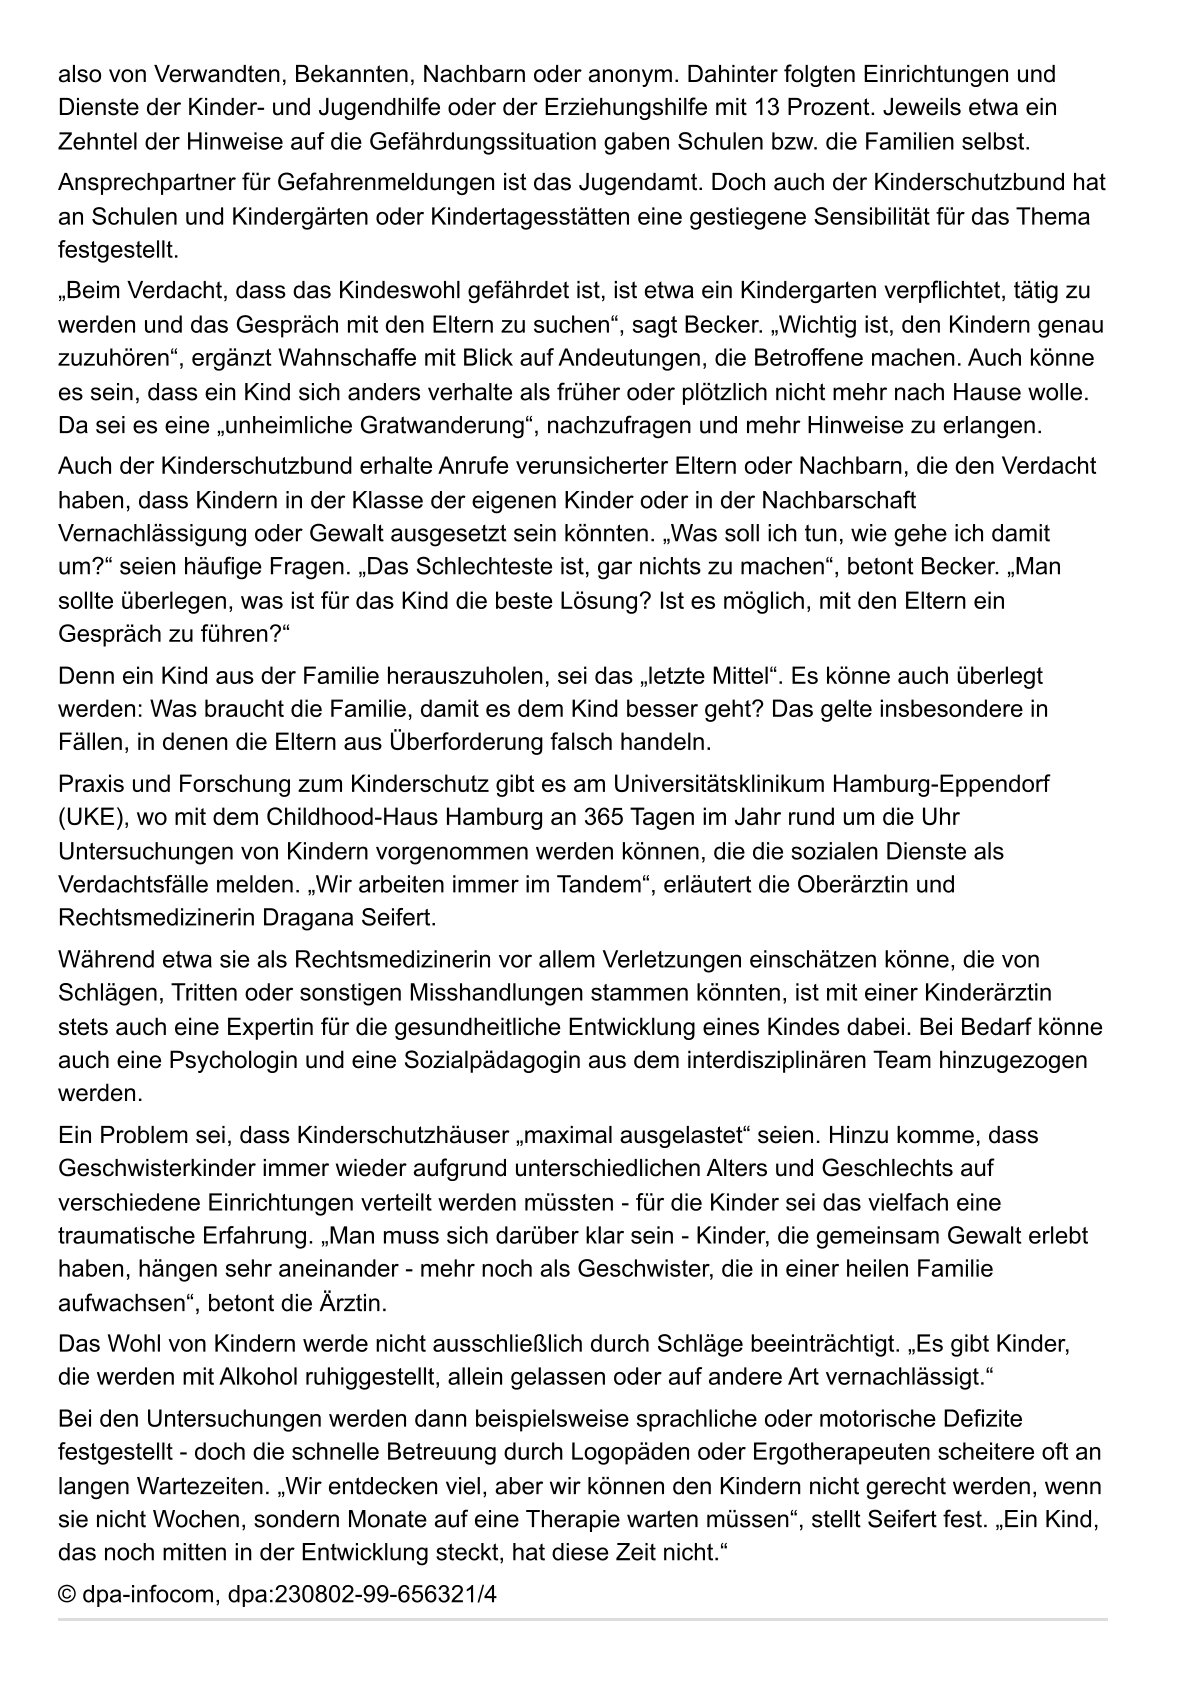 Höchststand bei Kindeswohlgefährdung in Deutschland Seite 2